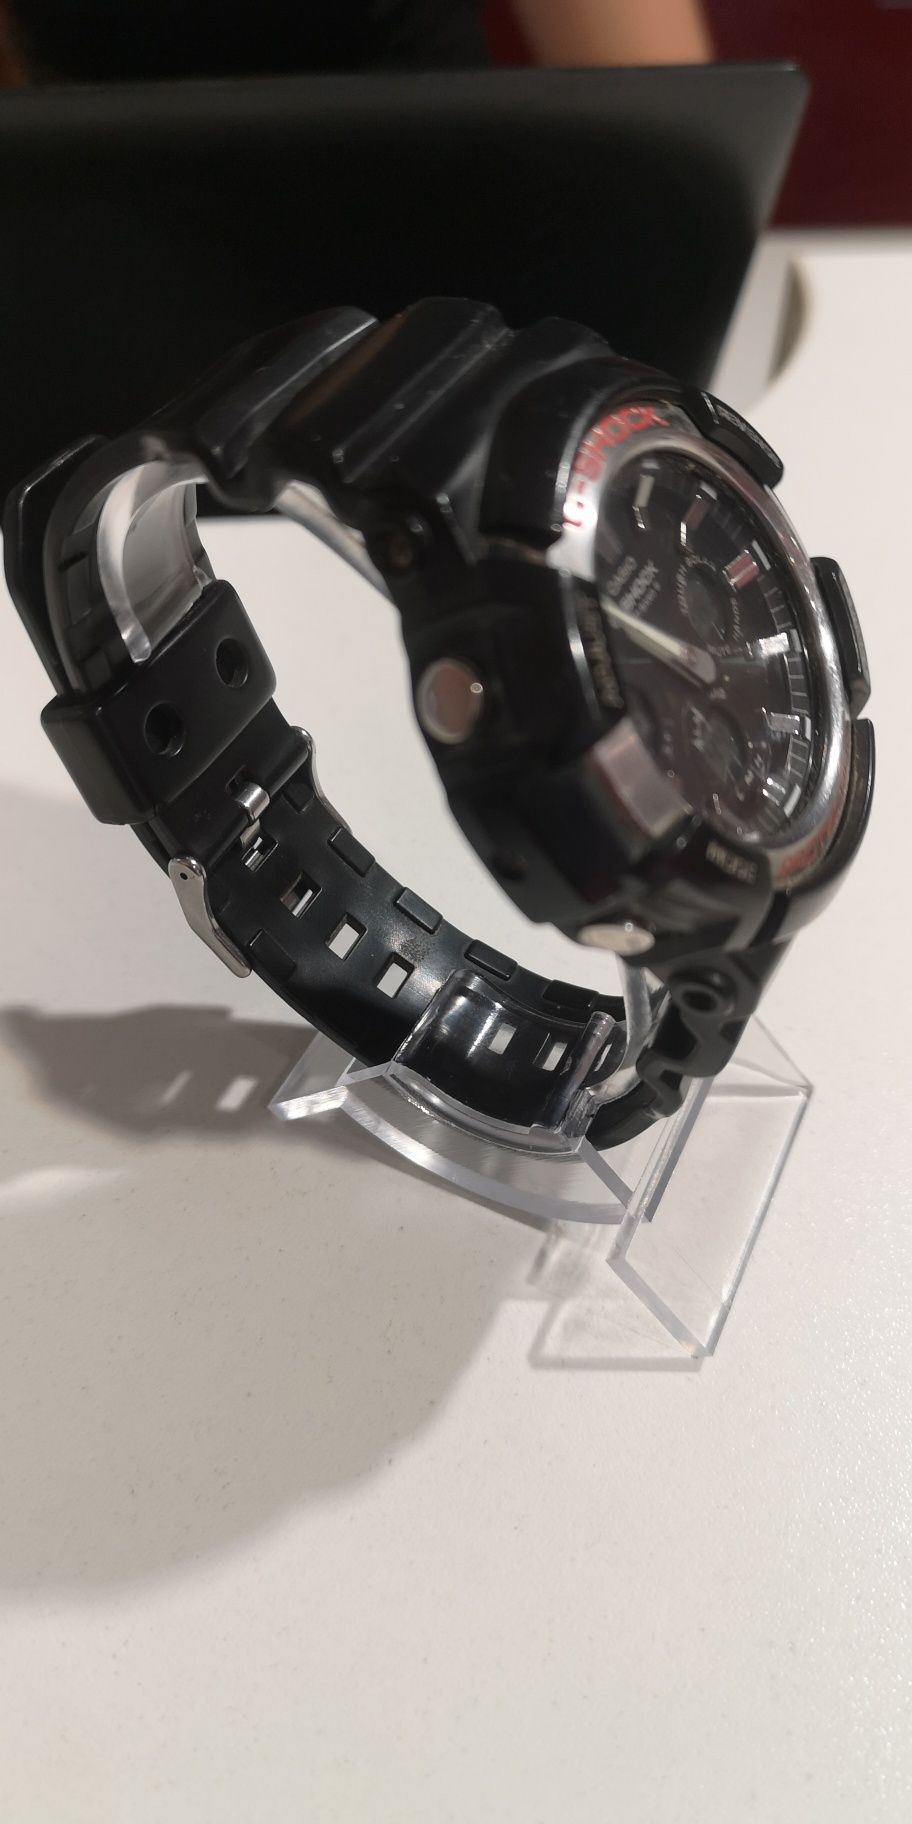 Товари та послуги
Чоловічий годинник CASIO (Японія)
Годинник чоловічий